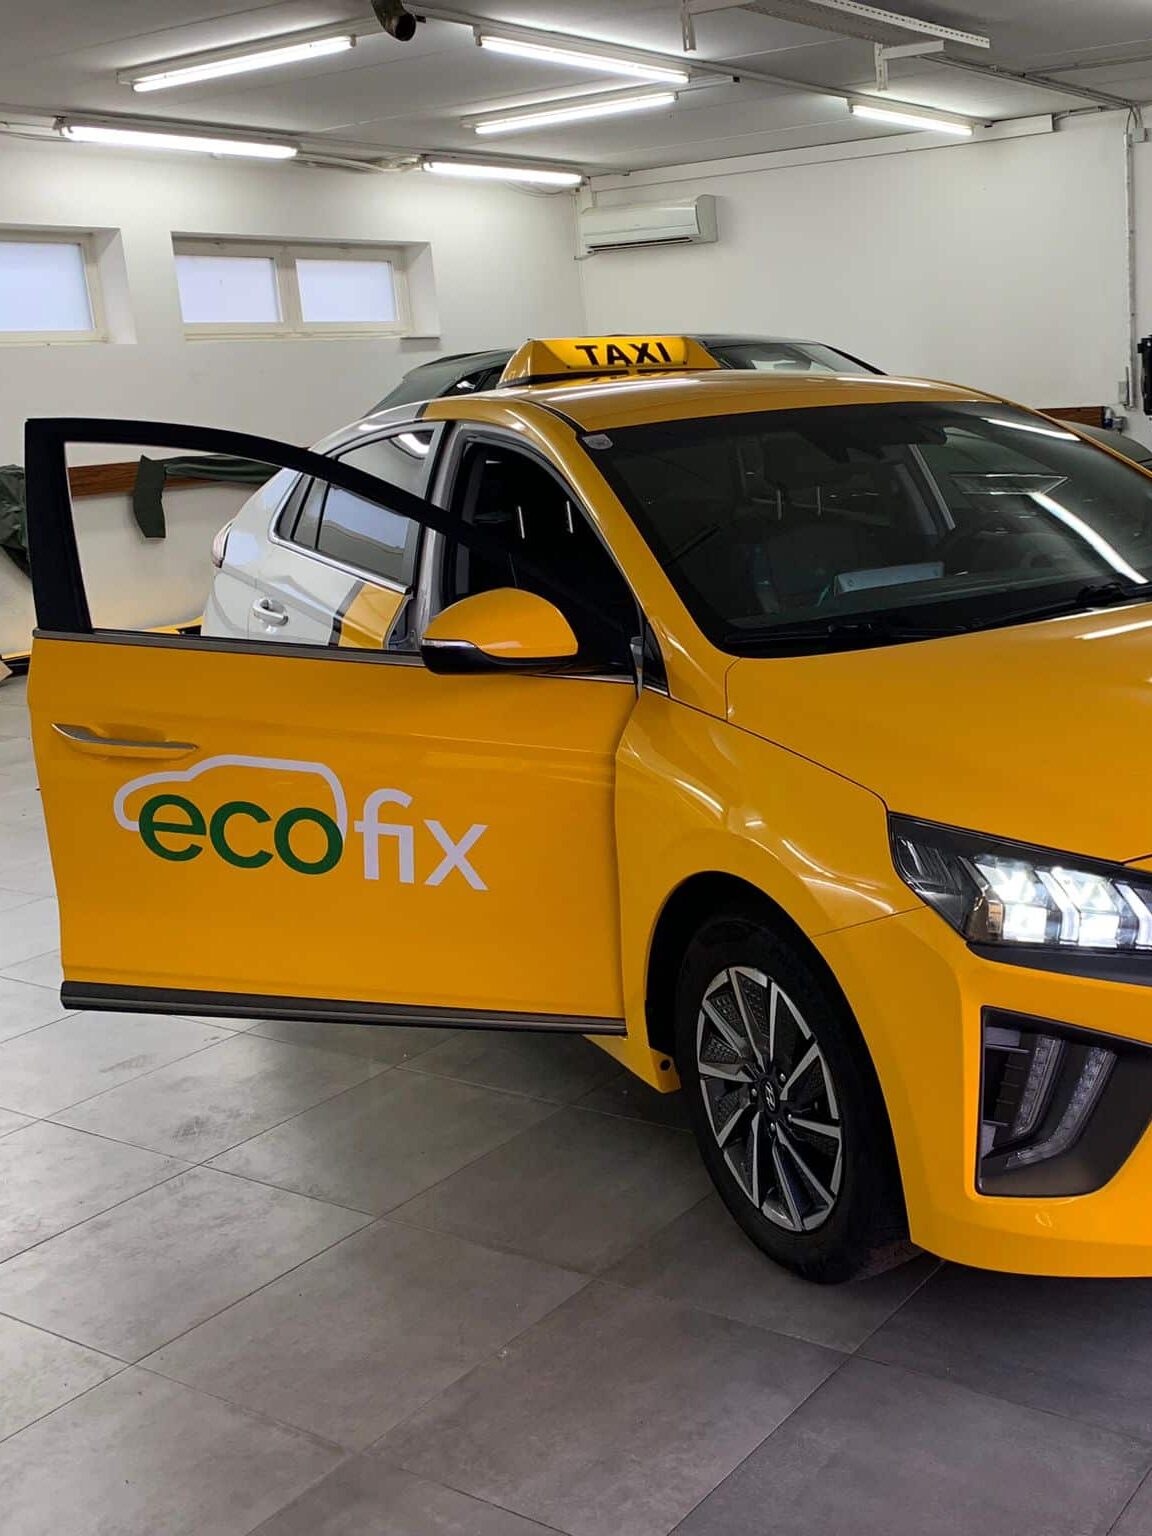 EcoFix Taxi - Beispiel eines Fahrzeuges, wenn Sie bei Ecofix ein Taxi bestellen